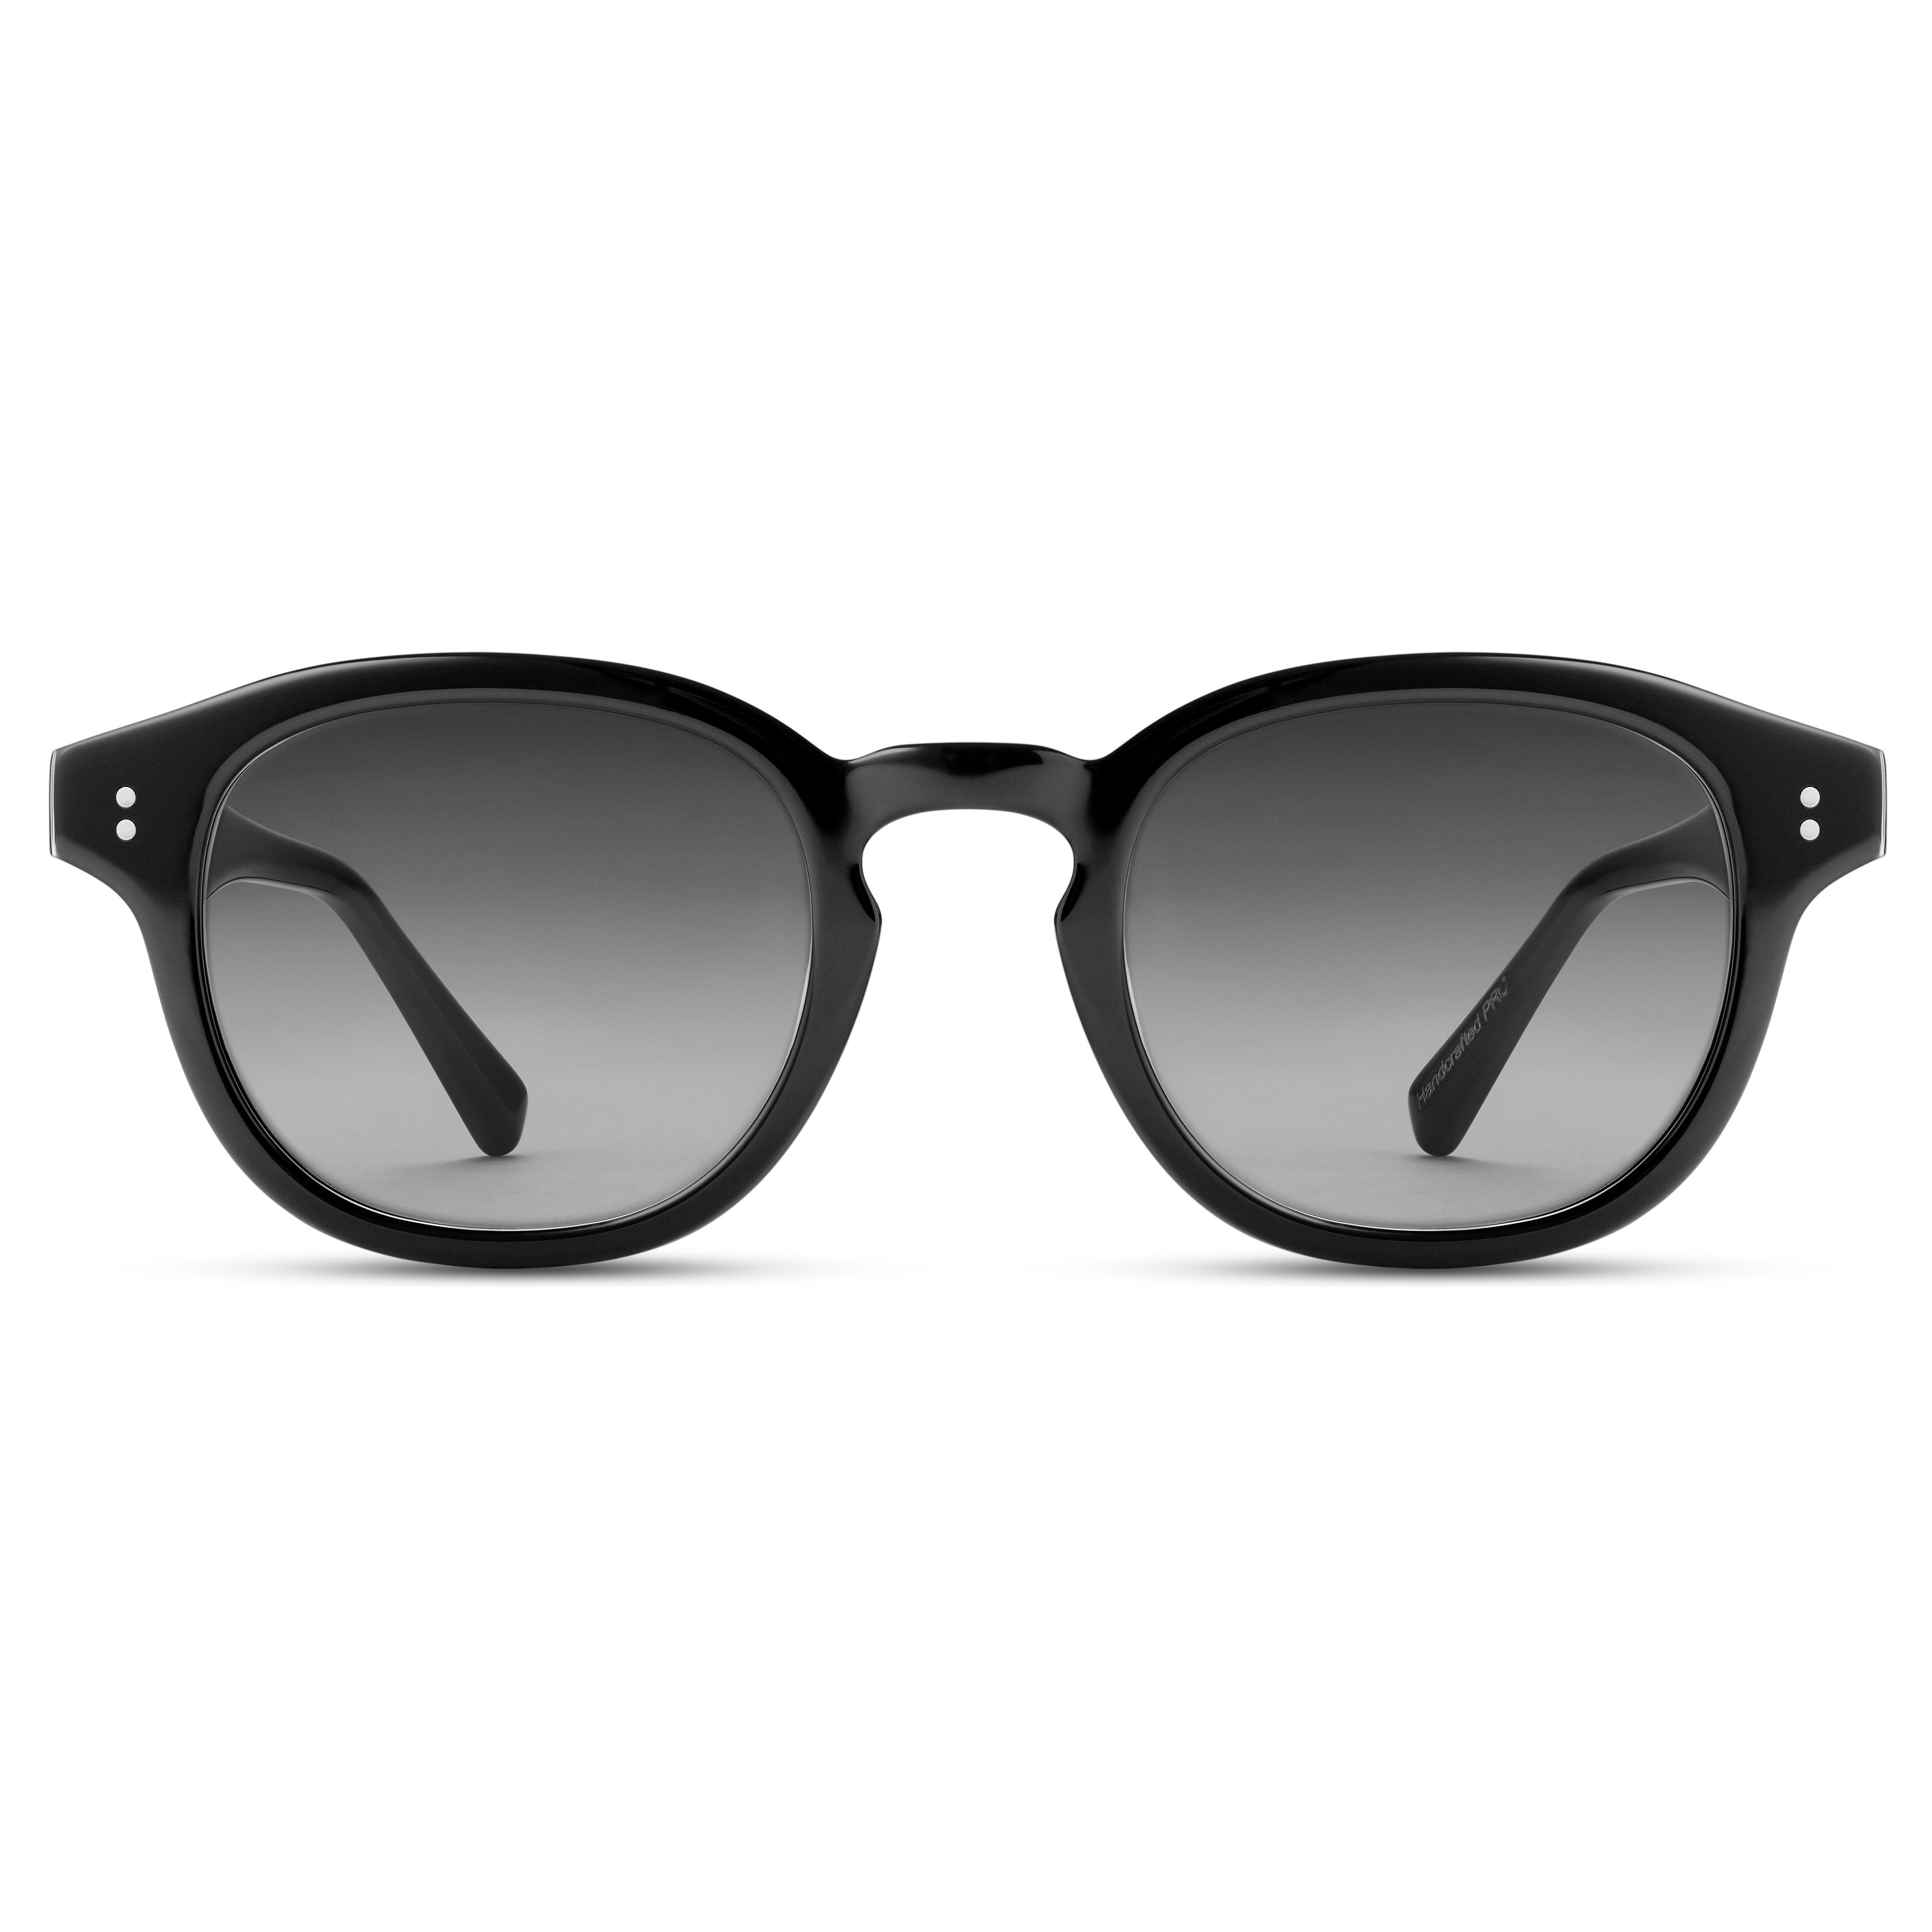 Hranaté slnečné okuliare Bille s rohovými rámami v čiernej farbe